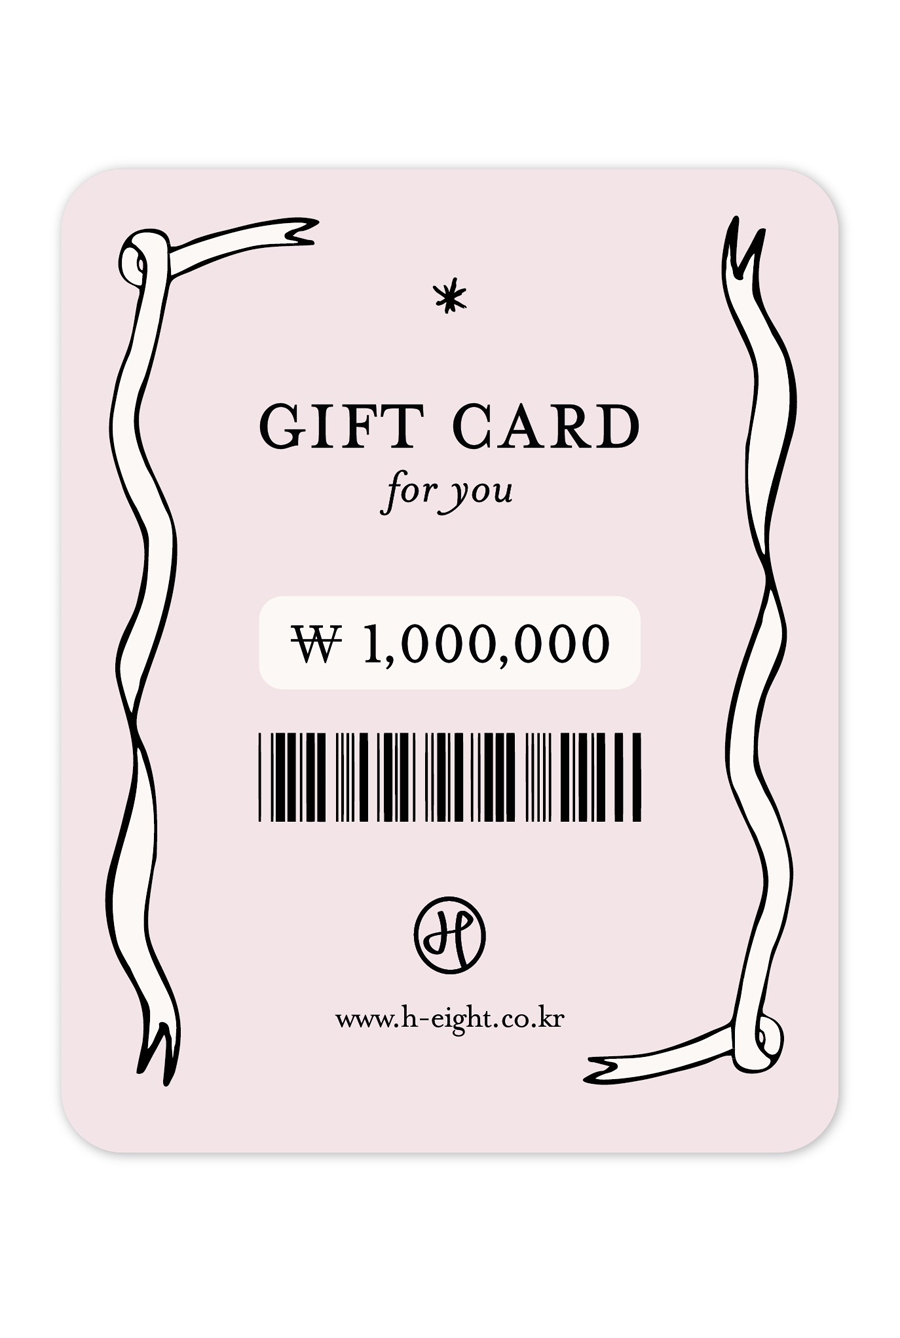 GIFT CARD (지급액 1,100,000원)